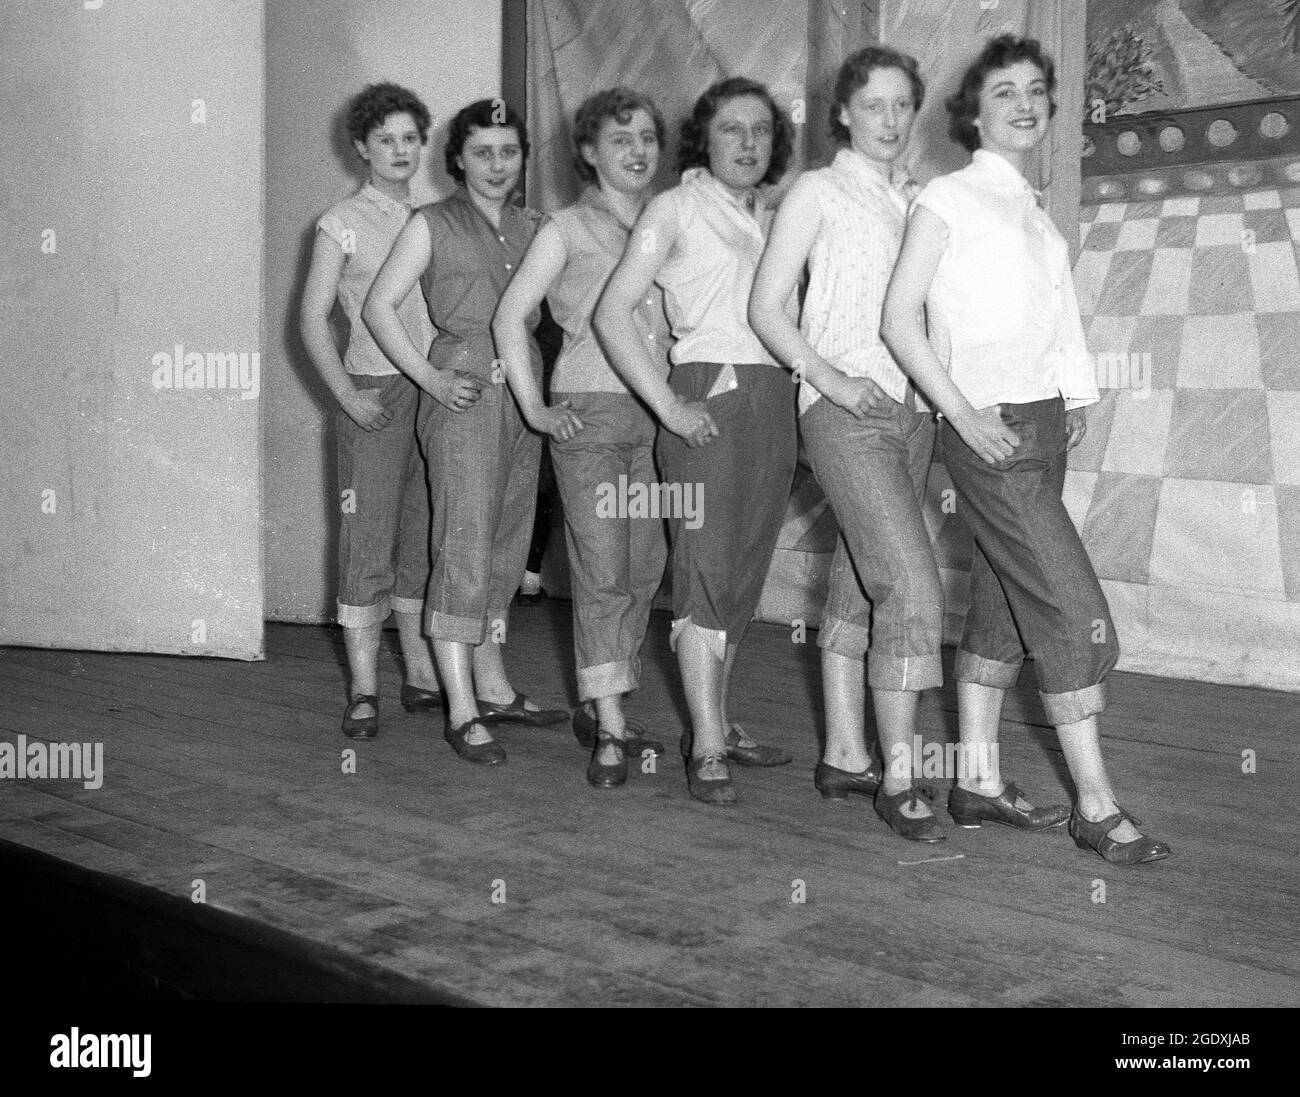 1957, historische, junge weibliche Performer in ihren Kostümen - Jeans, die unter dem Knie aufgedreht wurden und ärmellose Blusen - erscheinen in der Pantomine Aladdin, einer Geschichte, die auf einer mittelöstlichen Volksgeschichte basiert und auf der Bühne für ihr Foto steht, England, Großbritannien. Jeans mit Handschellen oder aufgerollten Hosen wurden in Großbritannien zu Beginn des Rock and Roll modisch, als Rockabilly populär wurde. Stockfoto